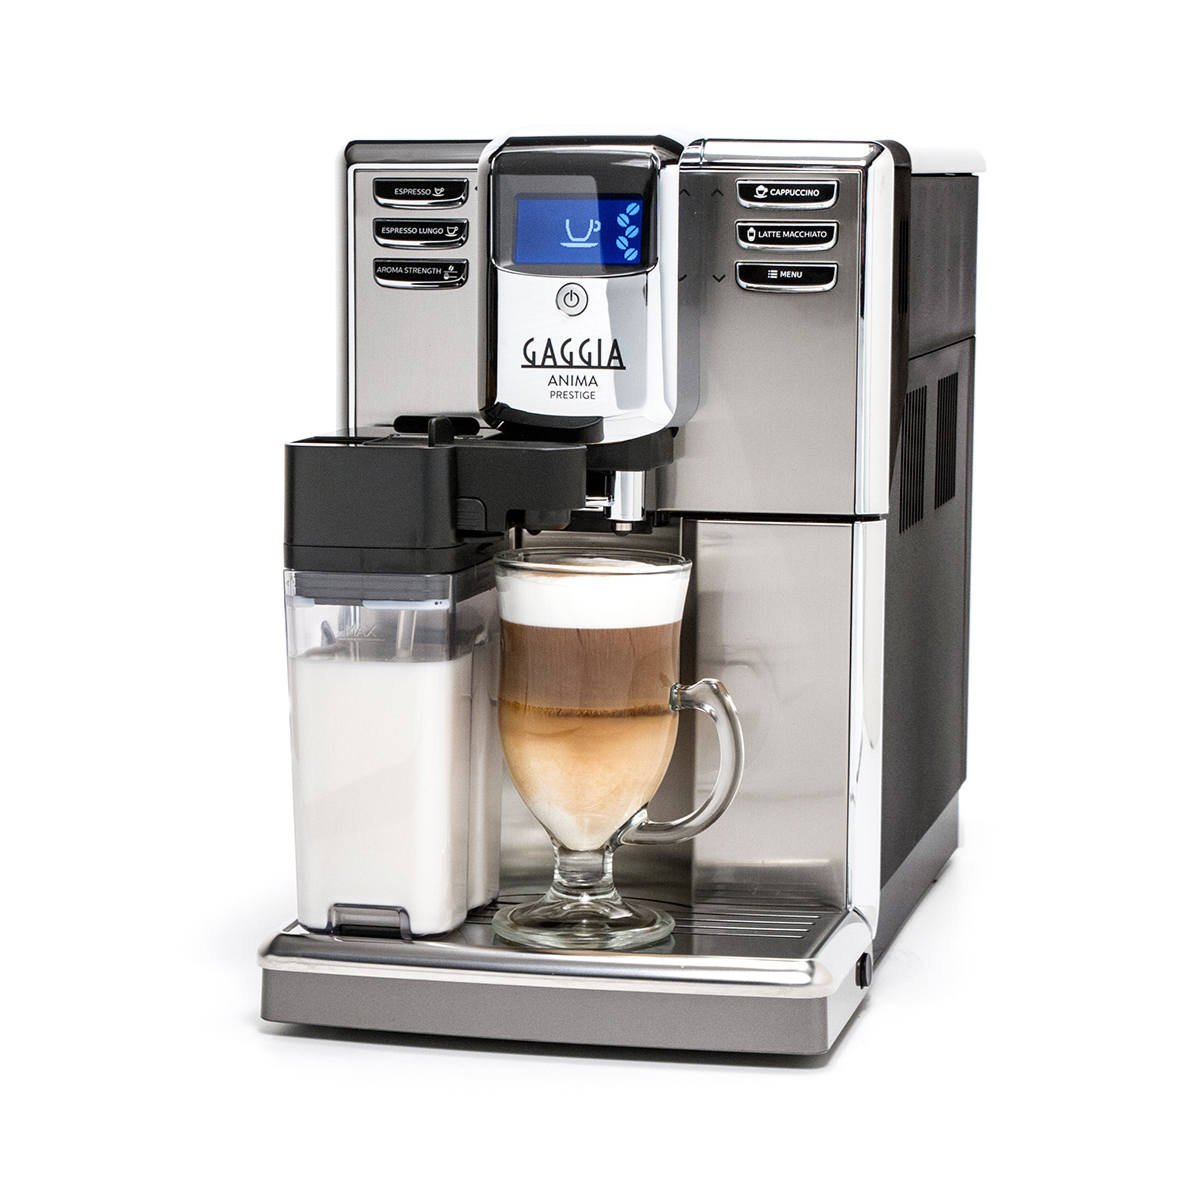 4 Gaggia Anima Prestige Automatic Coffee Machine